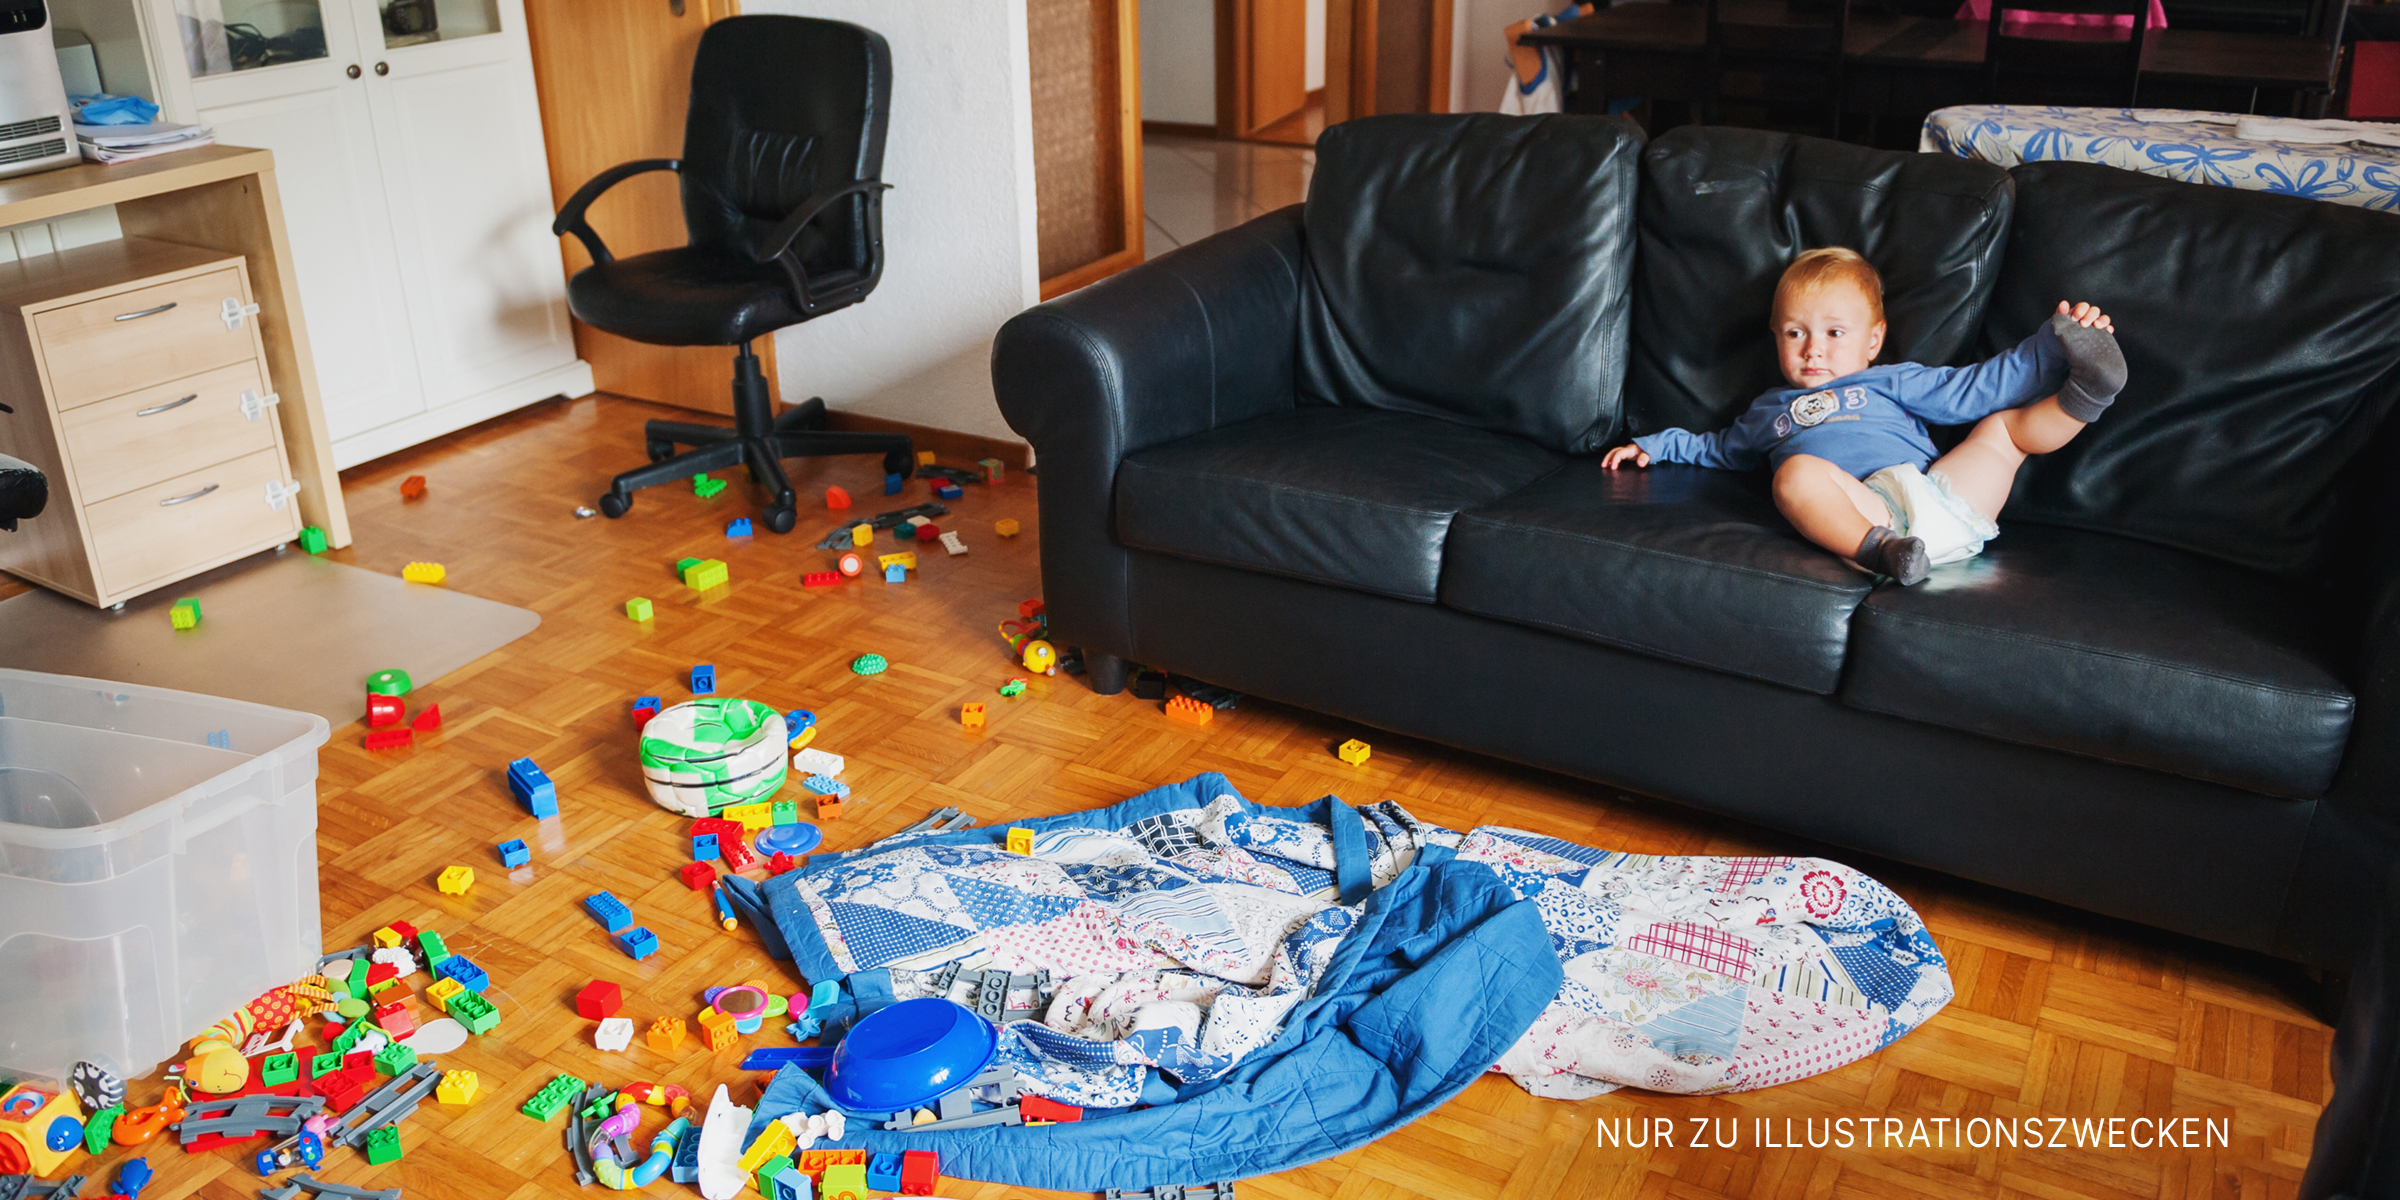 Baby liegt auf einer Couch in einem unordentlichen Zimmer | Quelle: Shutterstock